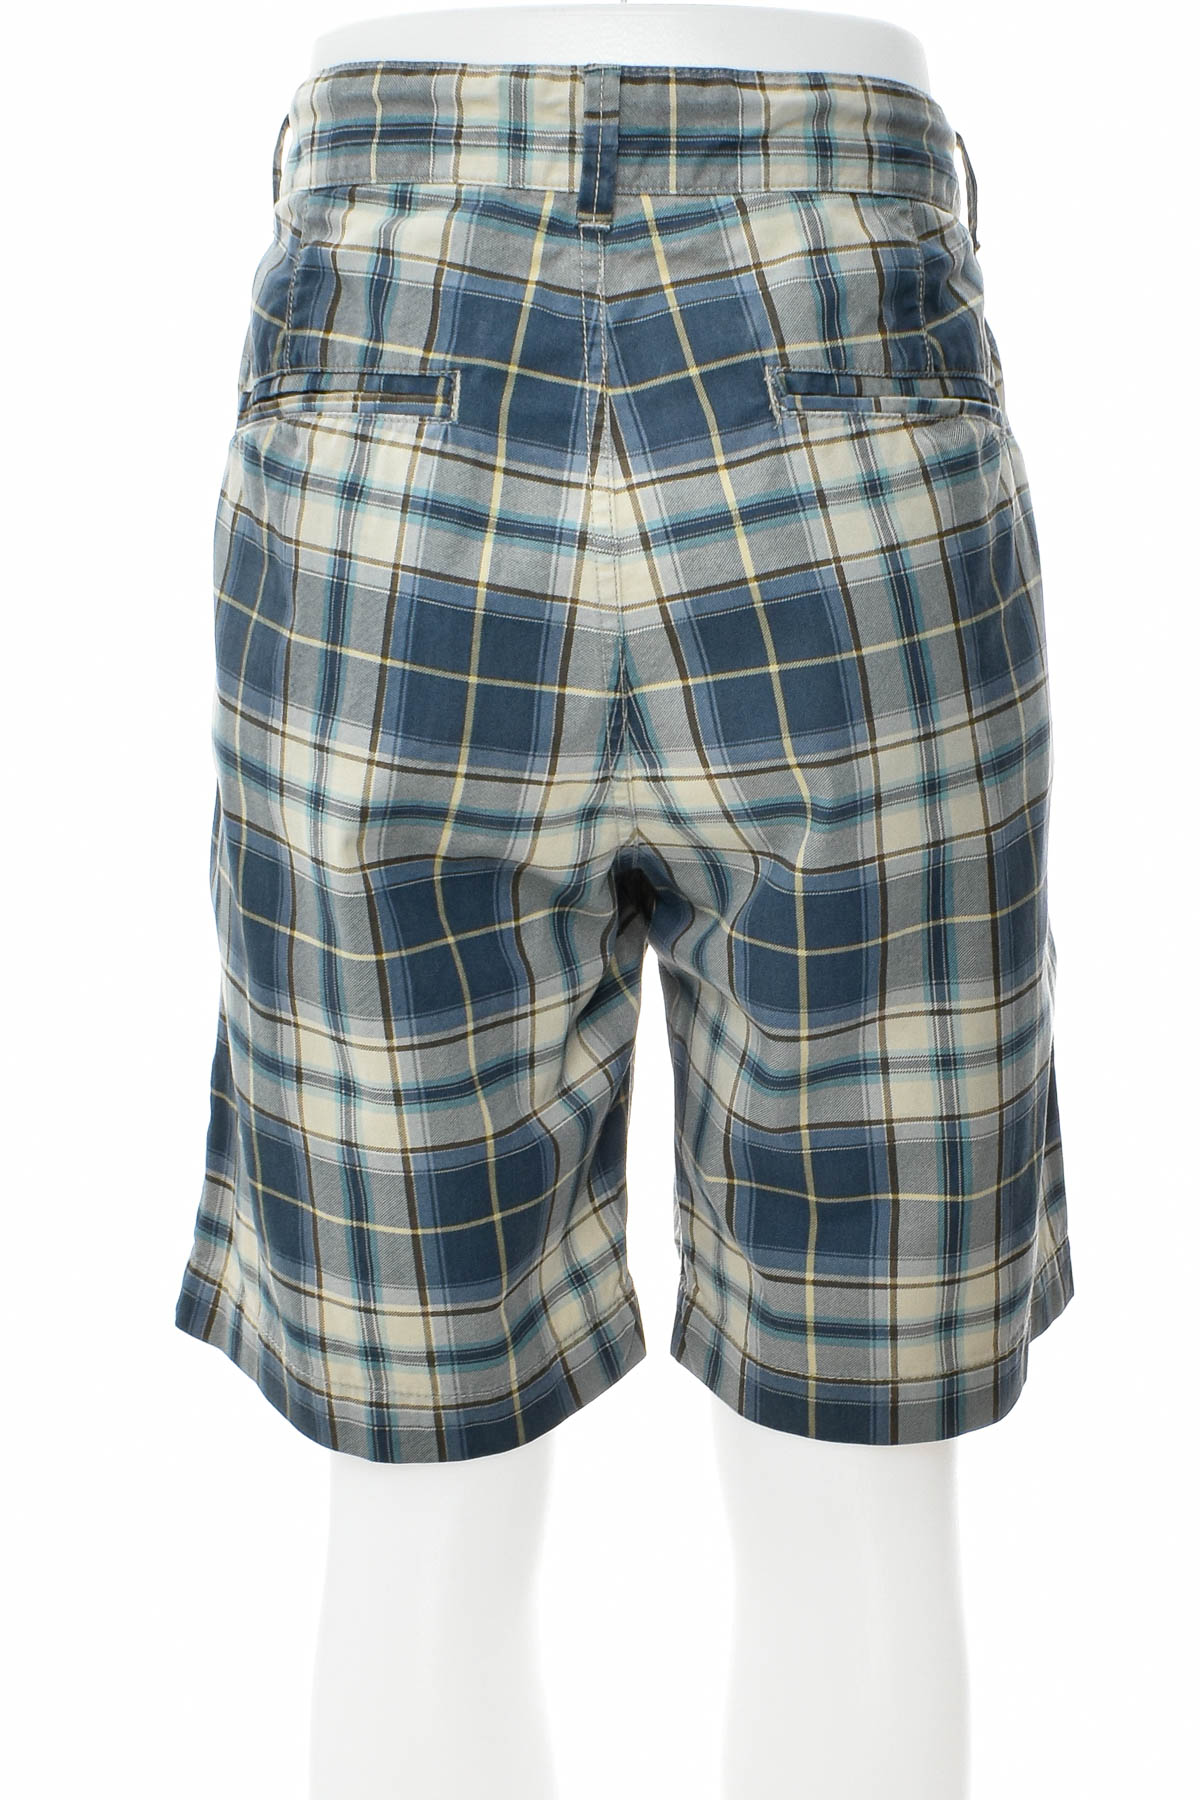 Pantaloni scurți bărbați - SMOG - 1